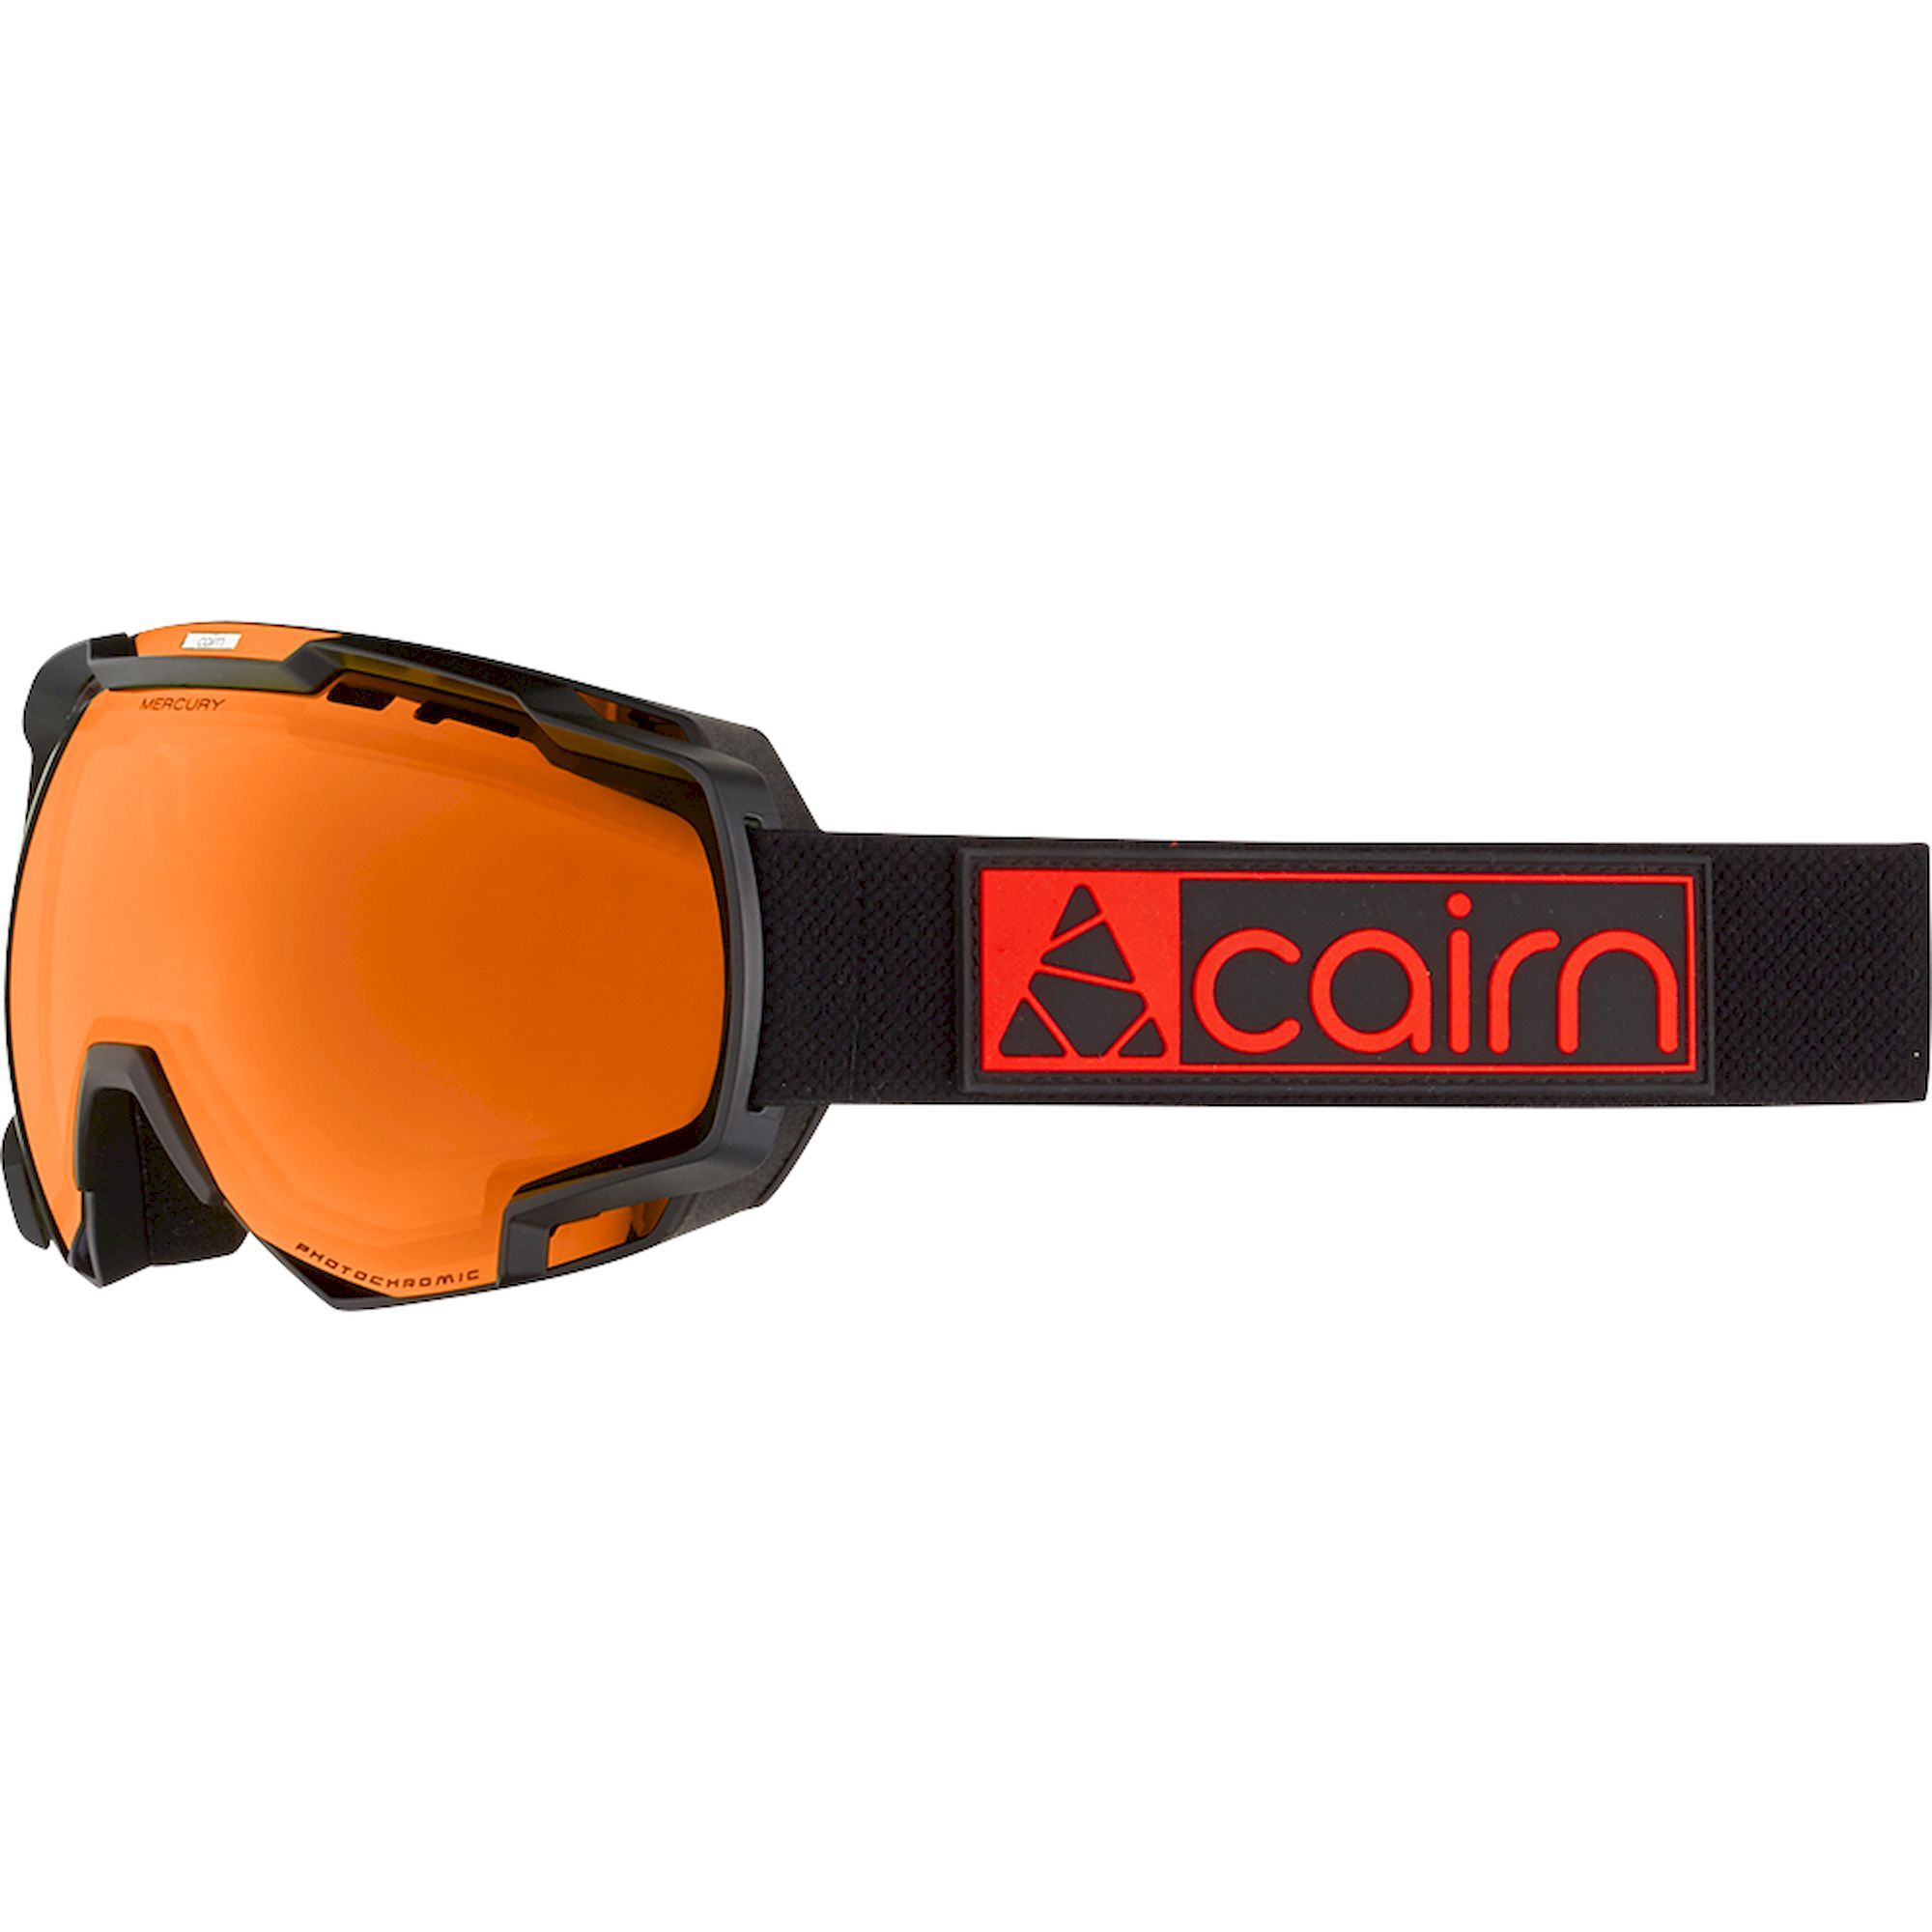 Cairn Mercury Pro - Masque ski